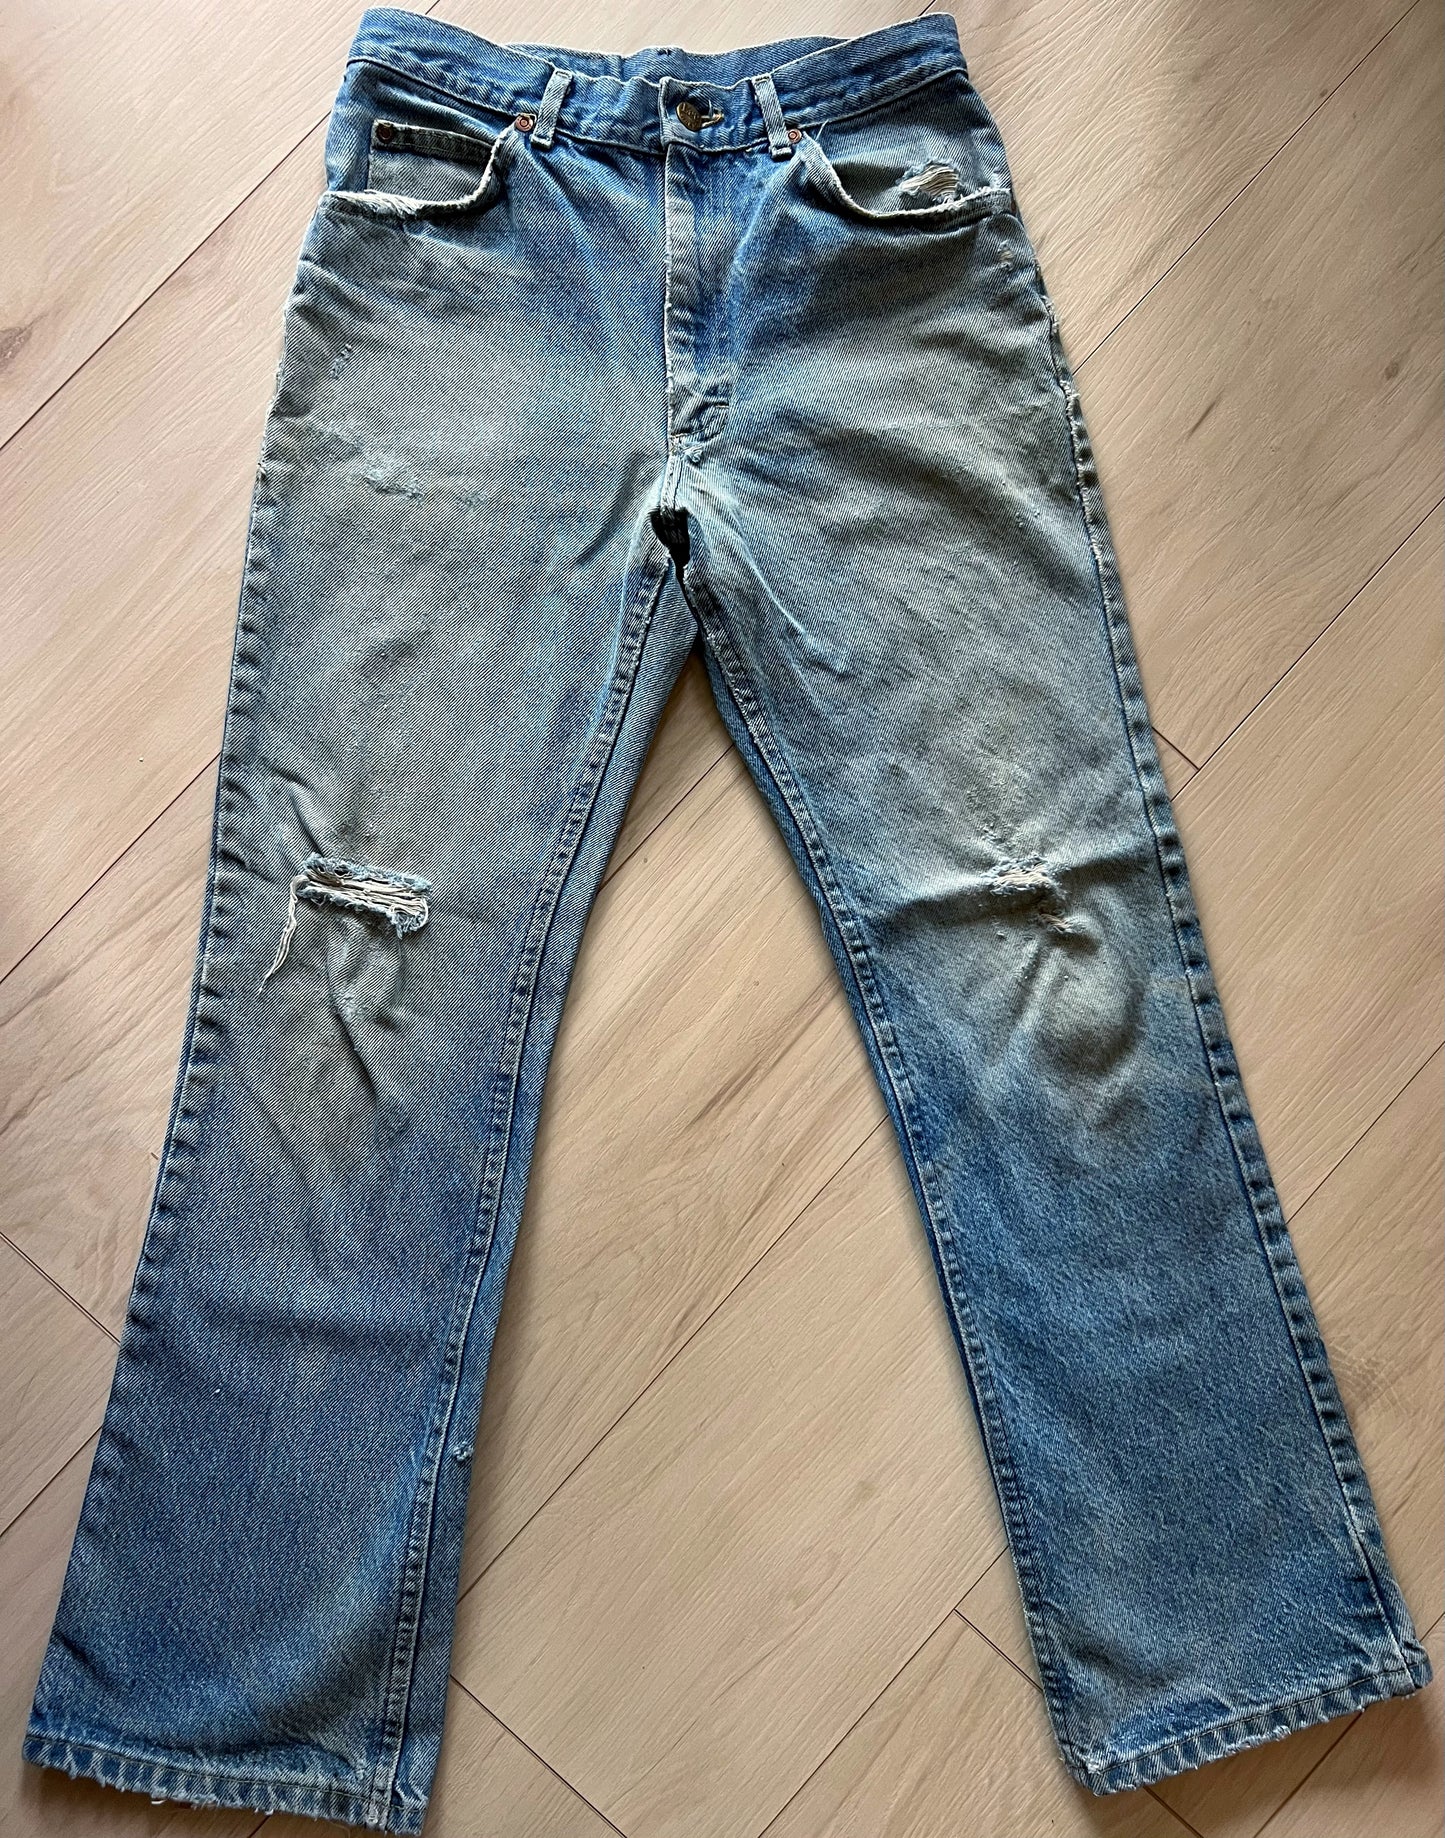 Size 26 Vintage Lee Rider Jeans